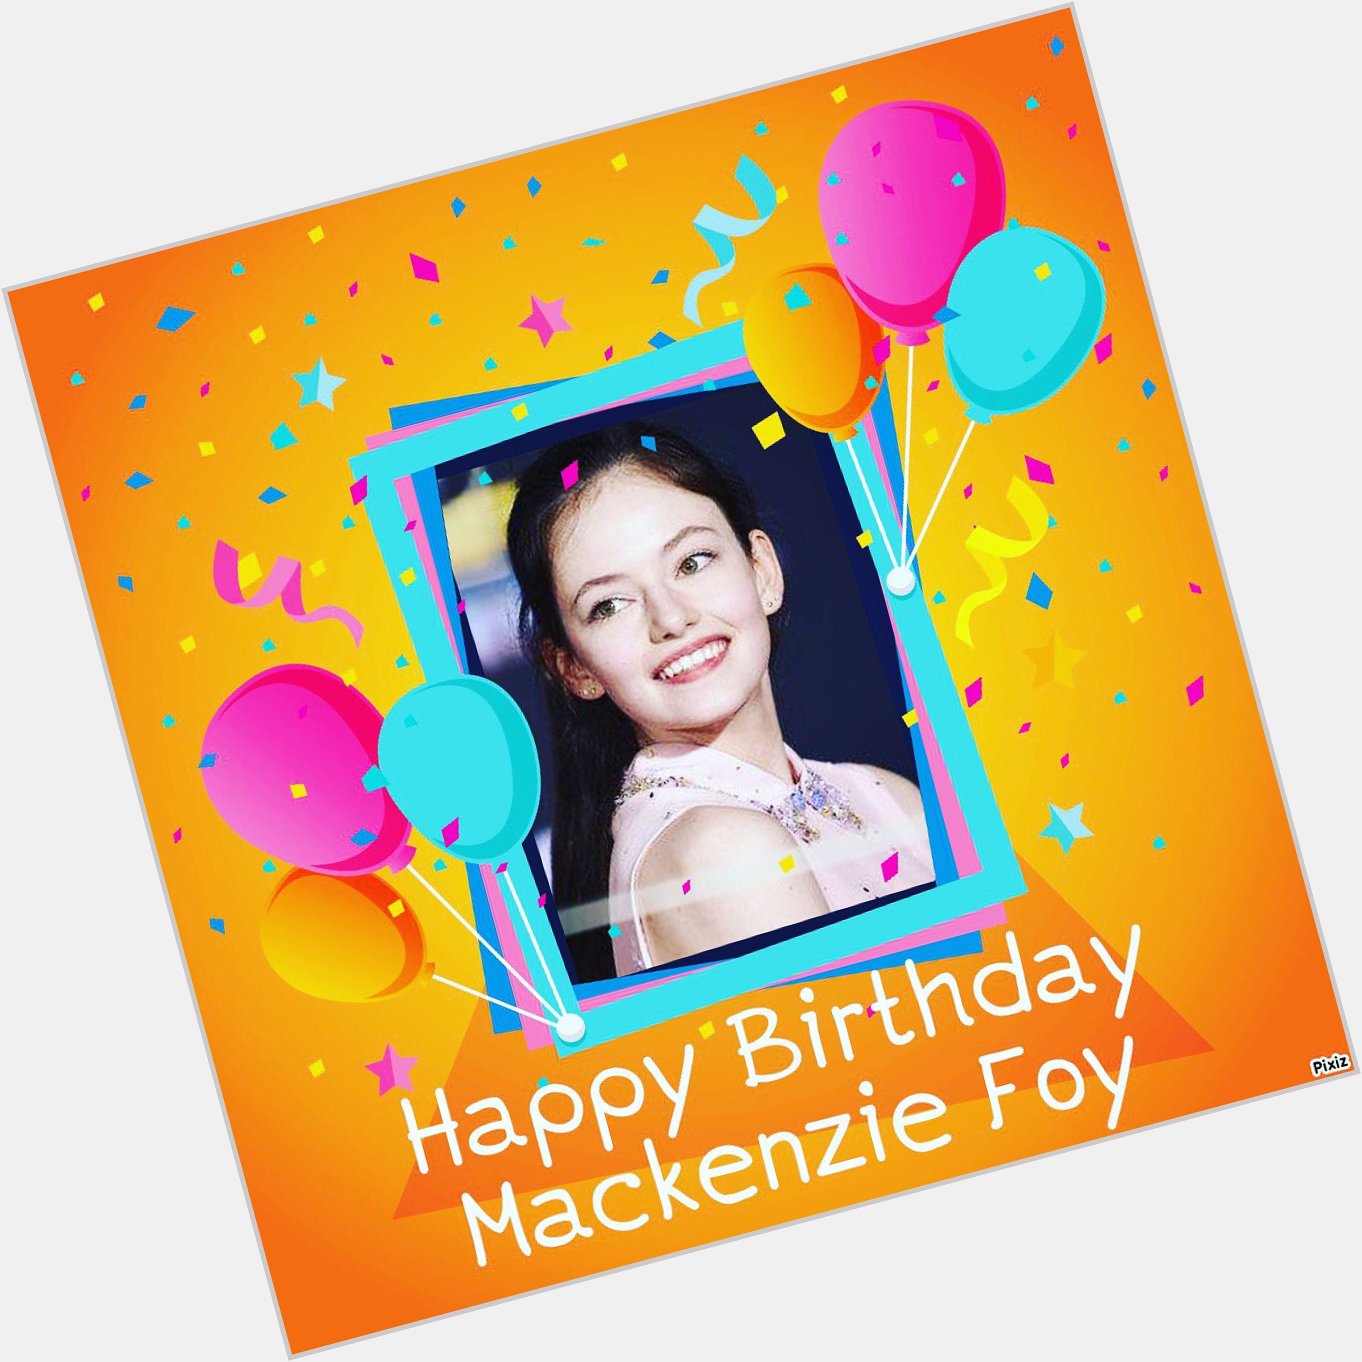 Happy birthday Mackenzie Foy 